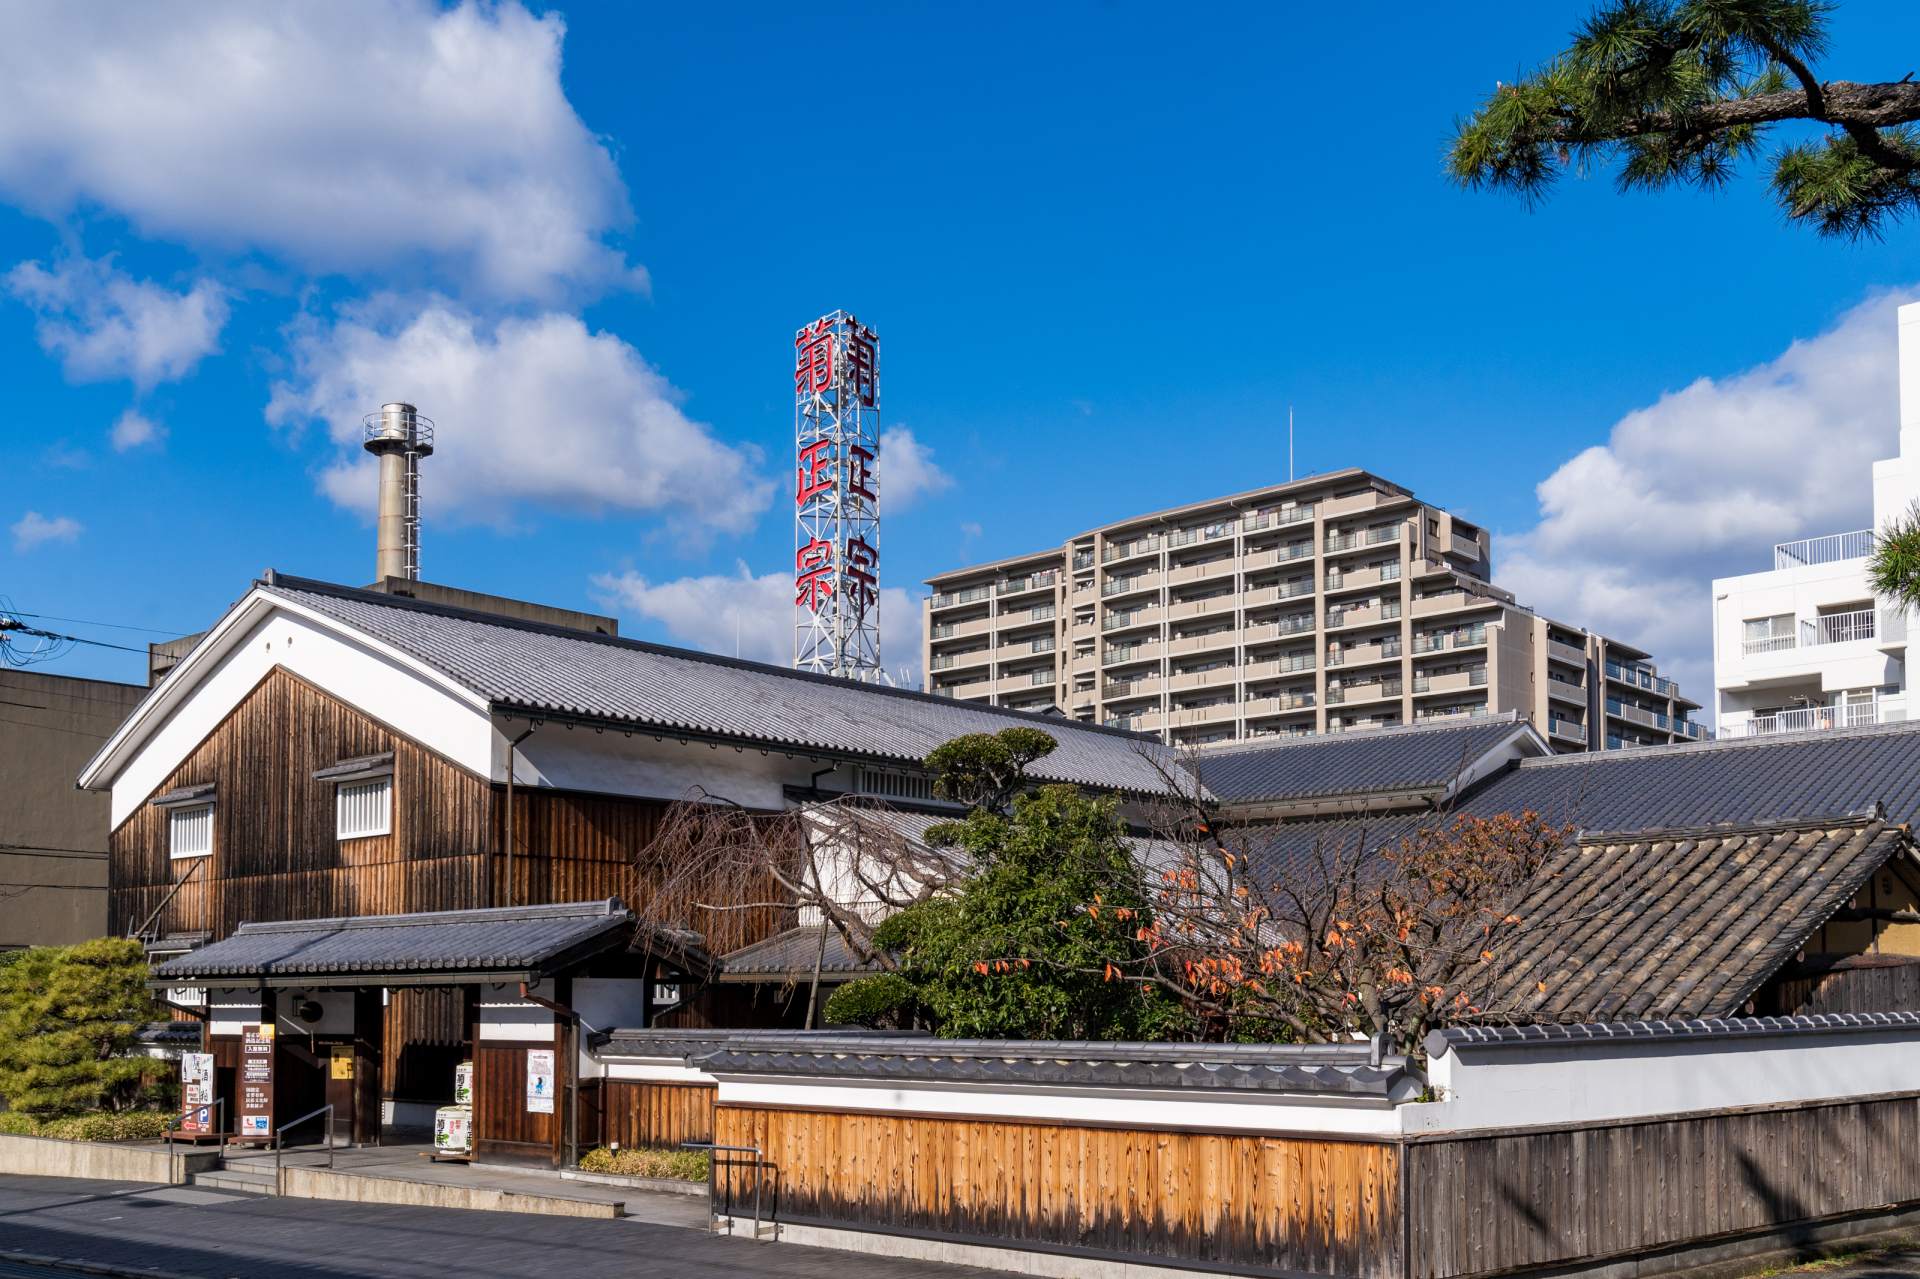 La arquitectura de la cervecería de sake que permanece en el paisaje moderno cuenta la historia de la cervecería de sake.